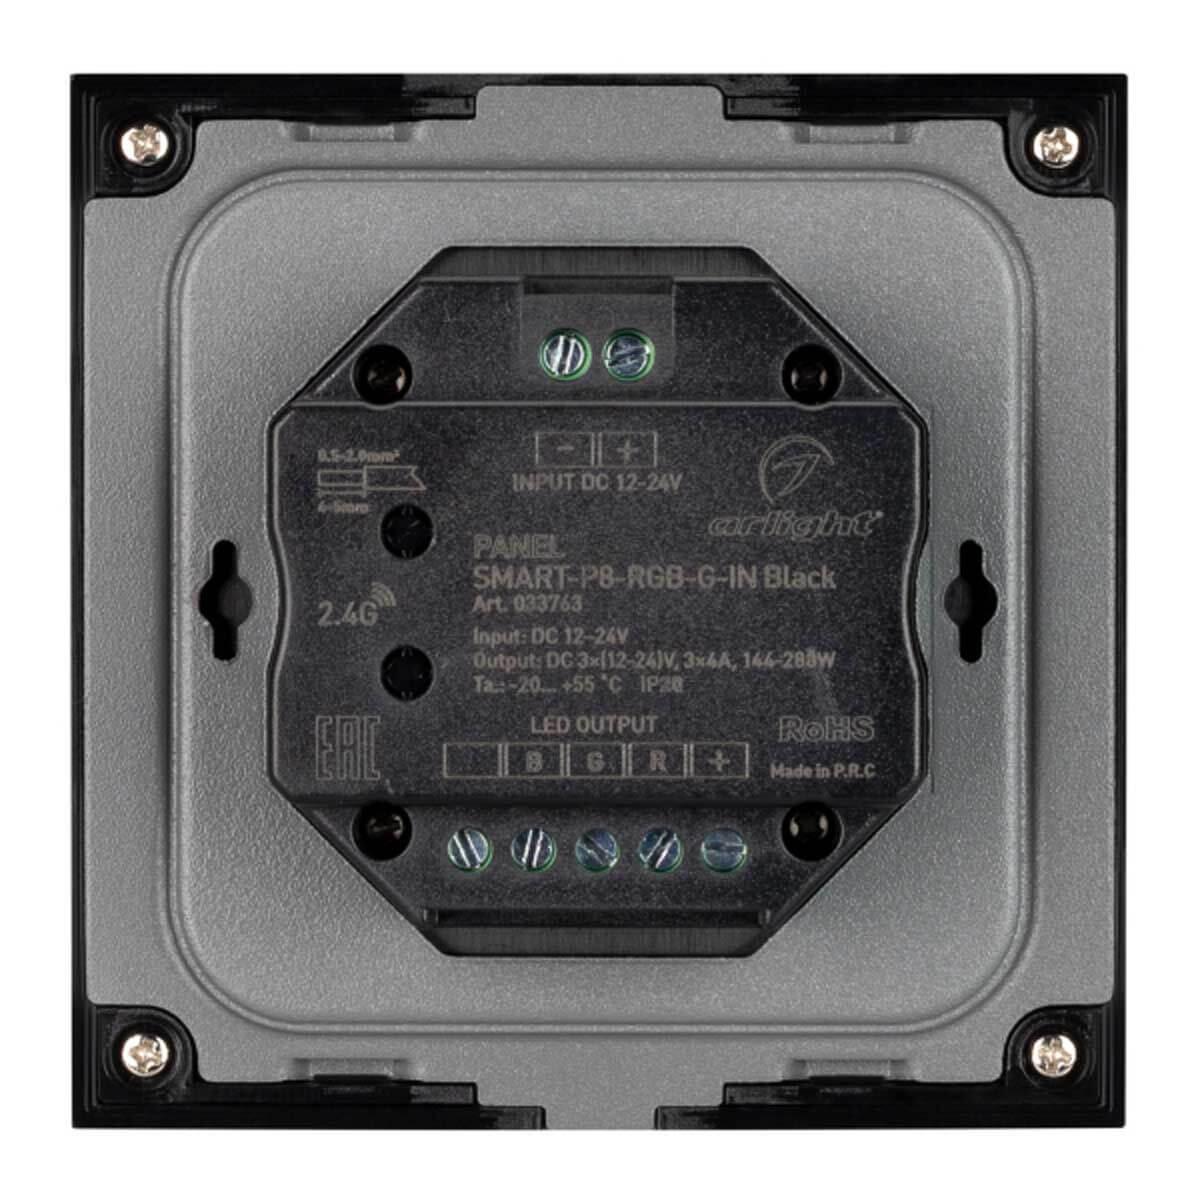 панель управления arlight smart-p8-rgb-g-in black 033763